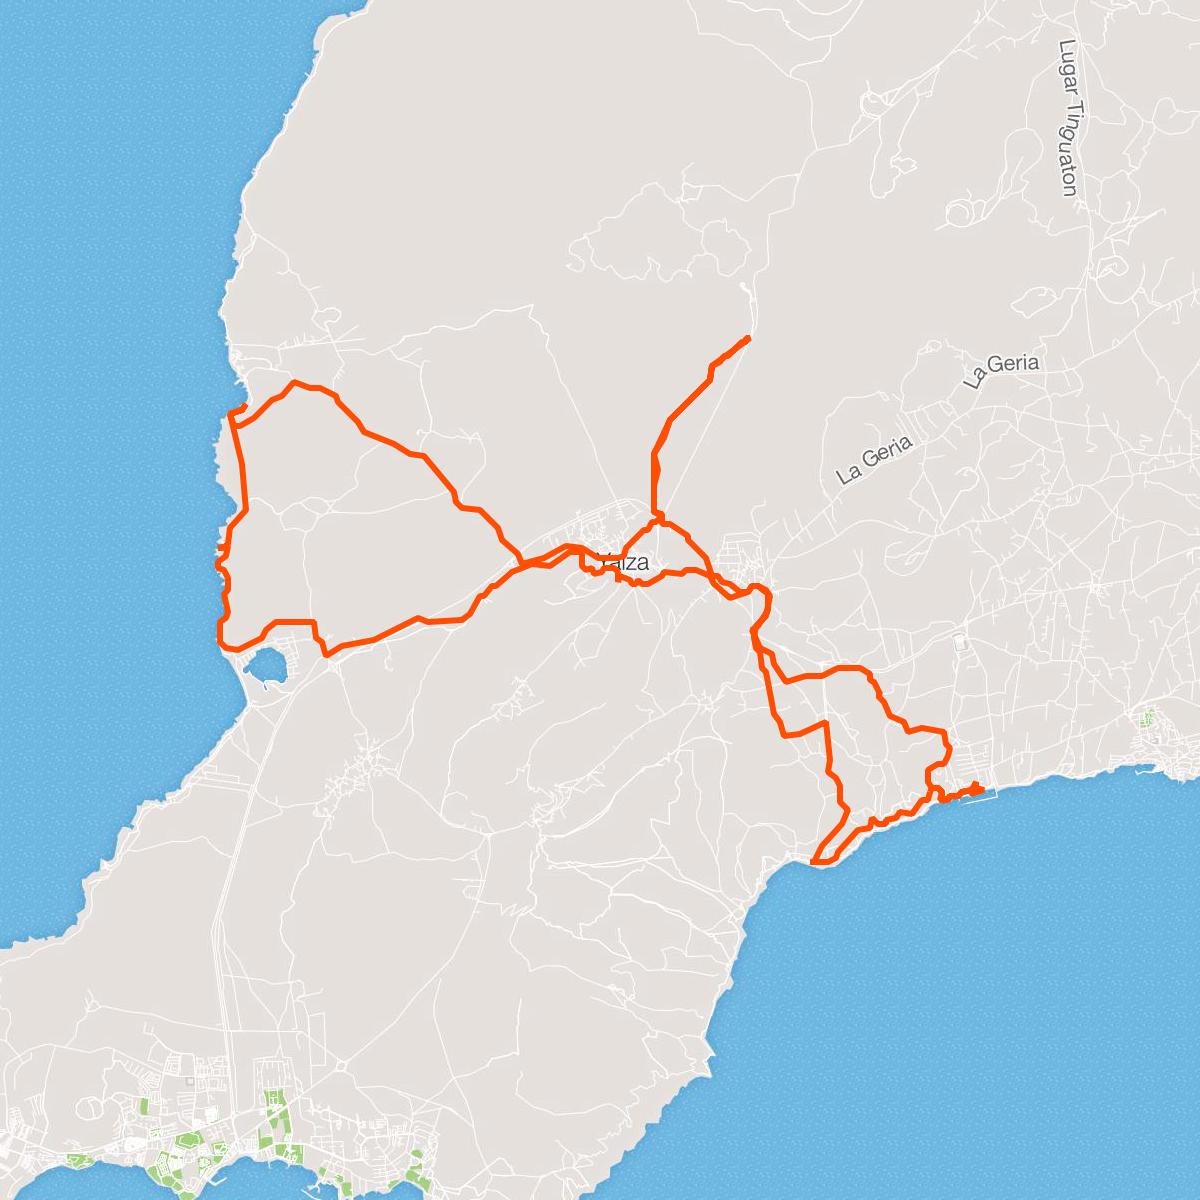 Entrenamiento para triathlon en Lanzarote | ACTraining | Tours MTB en Lanzarote